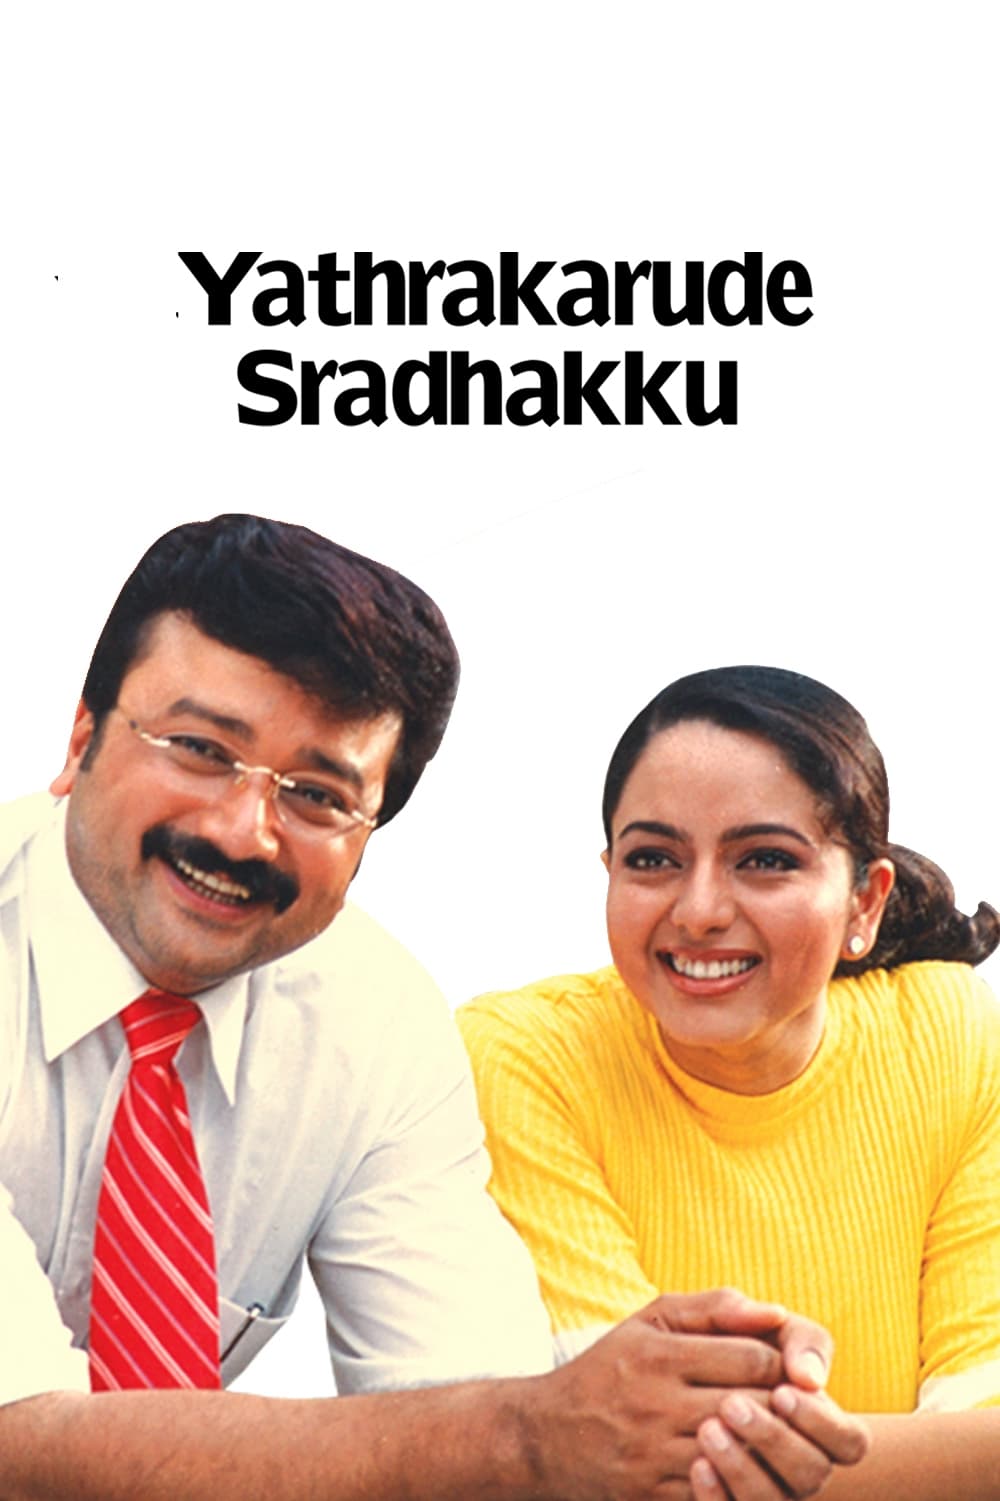 Yathrakarude Sradhakku